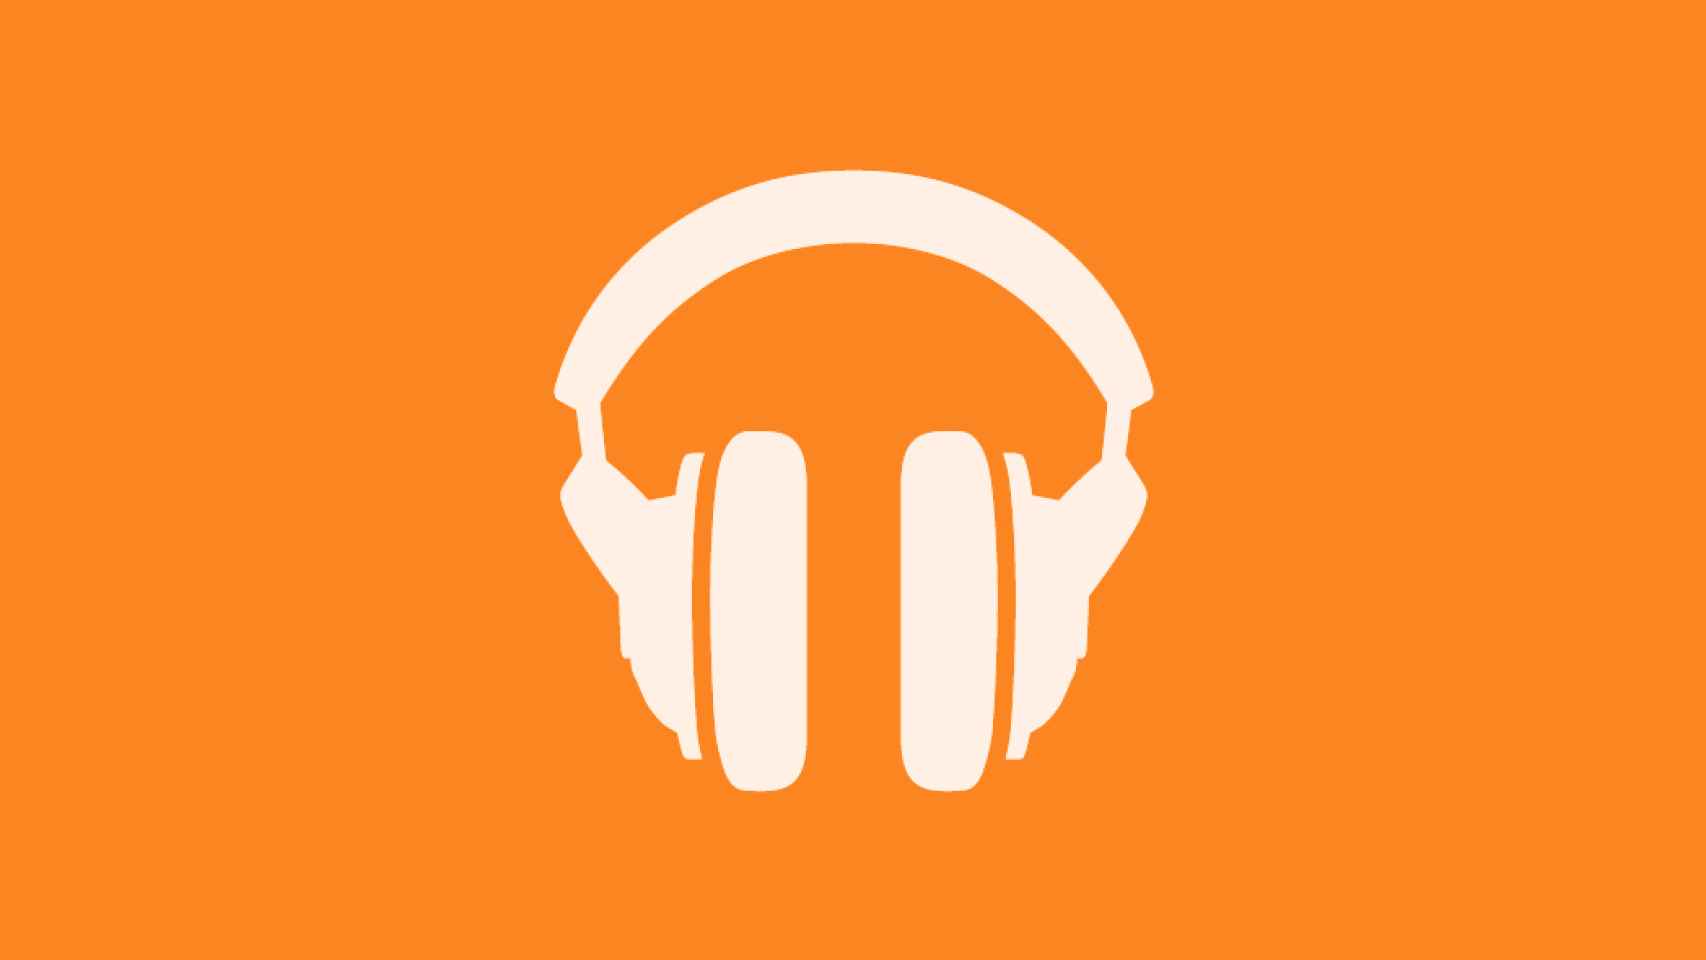 Google Play Música tiene problemas con la música más nueva al usar altavoces externos